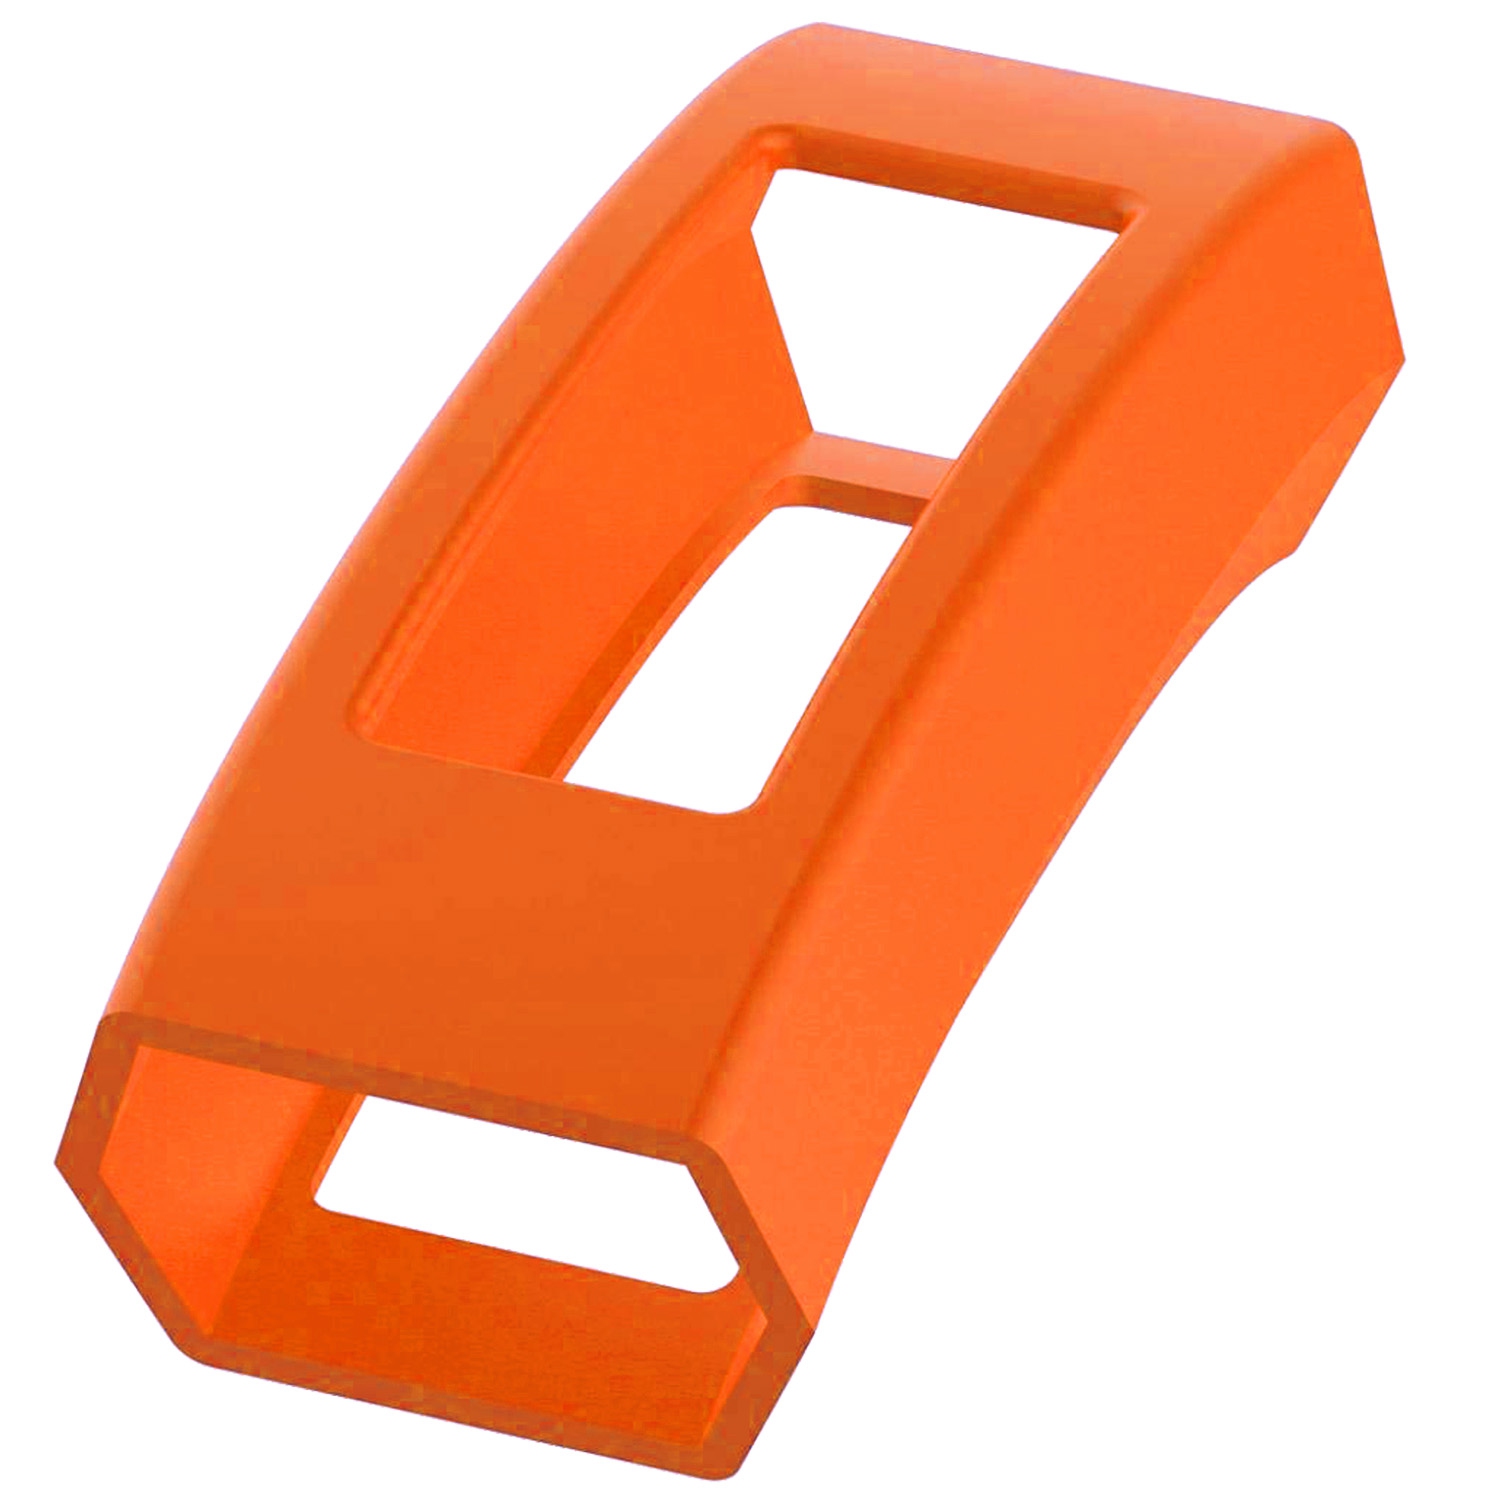 StrapsCo Silicone Rubber Protective Case Cover for Fitbit Alta & Alta HR - Neon Orange